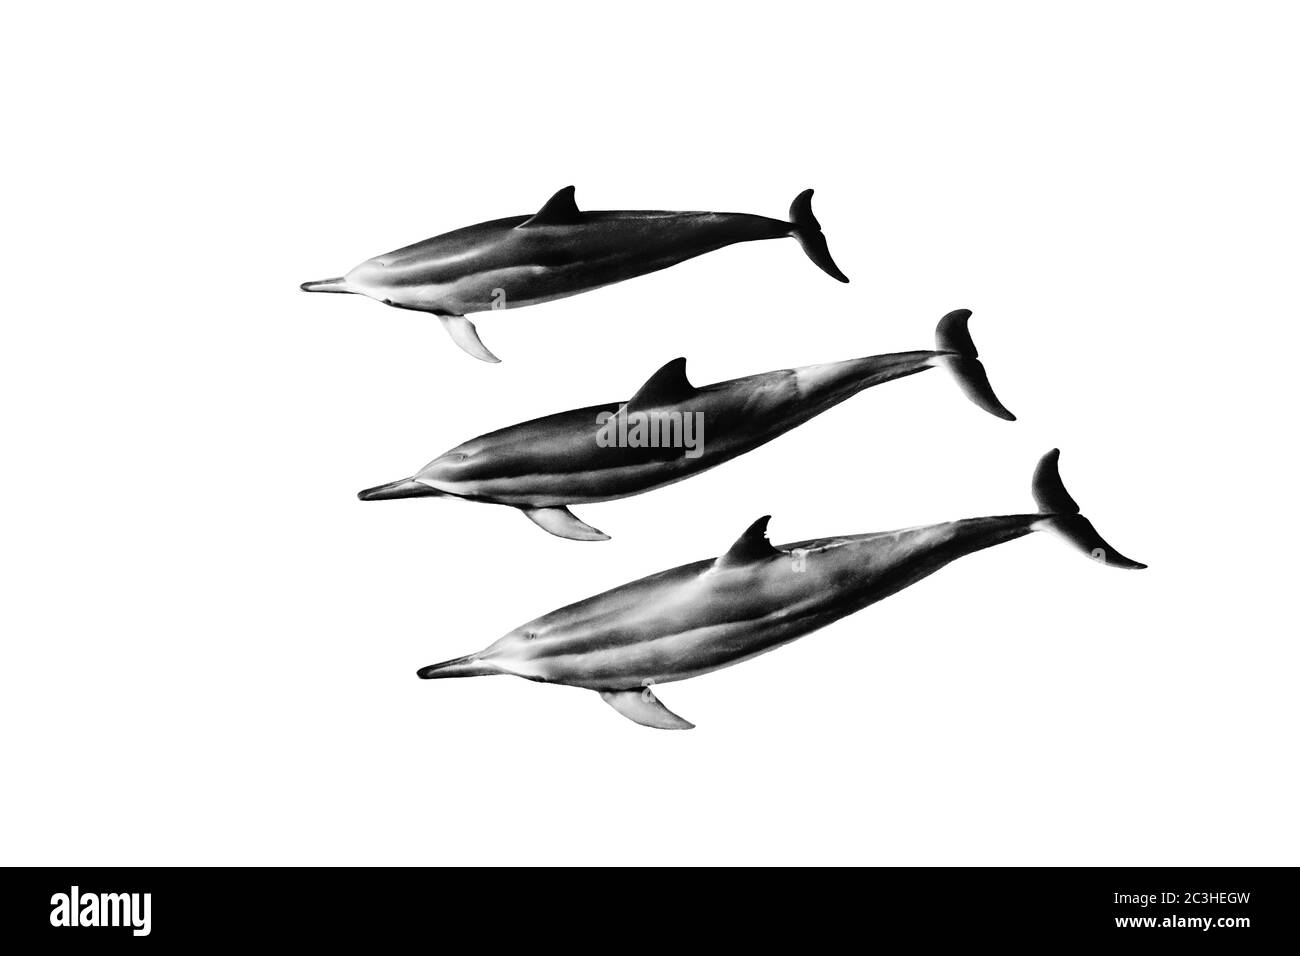 Bella illustrazione di tre delfini grigi su sfondo bianco Foto Stock